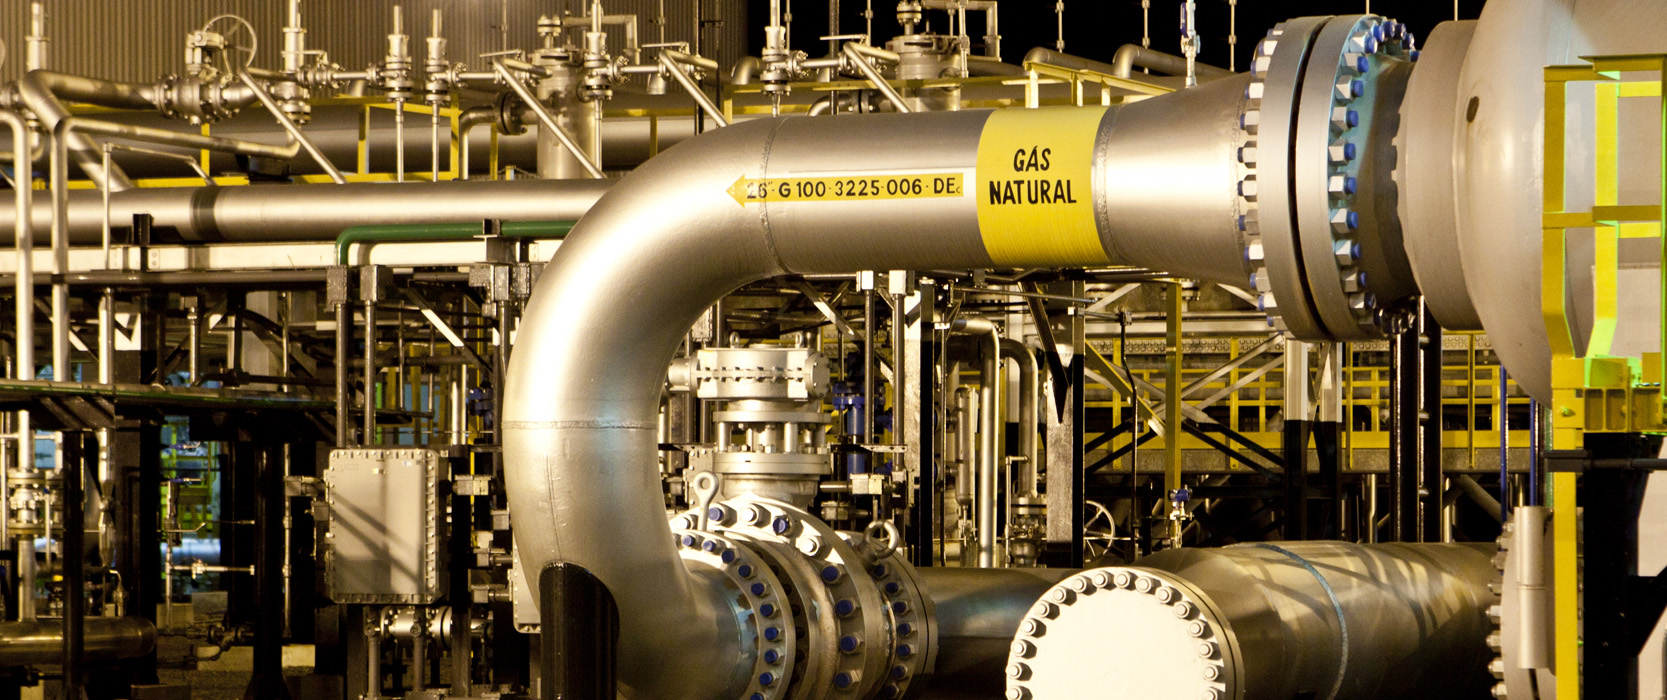 TBG está em busca de fornecedor de gás natural para balanceamento da rede em 2024. Na imagem: Instalações e rede de dutos metálicos, na cor dourada, do Gasbol – Gasoduto Bolívia-Brasil (Foto: Divulgação TBG)